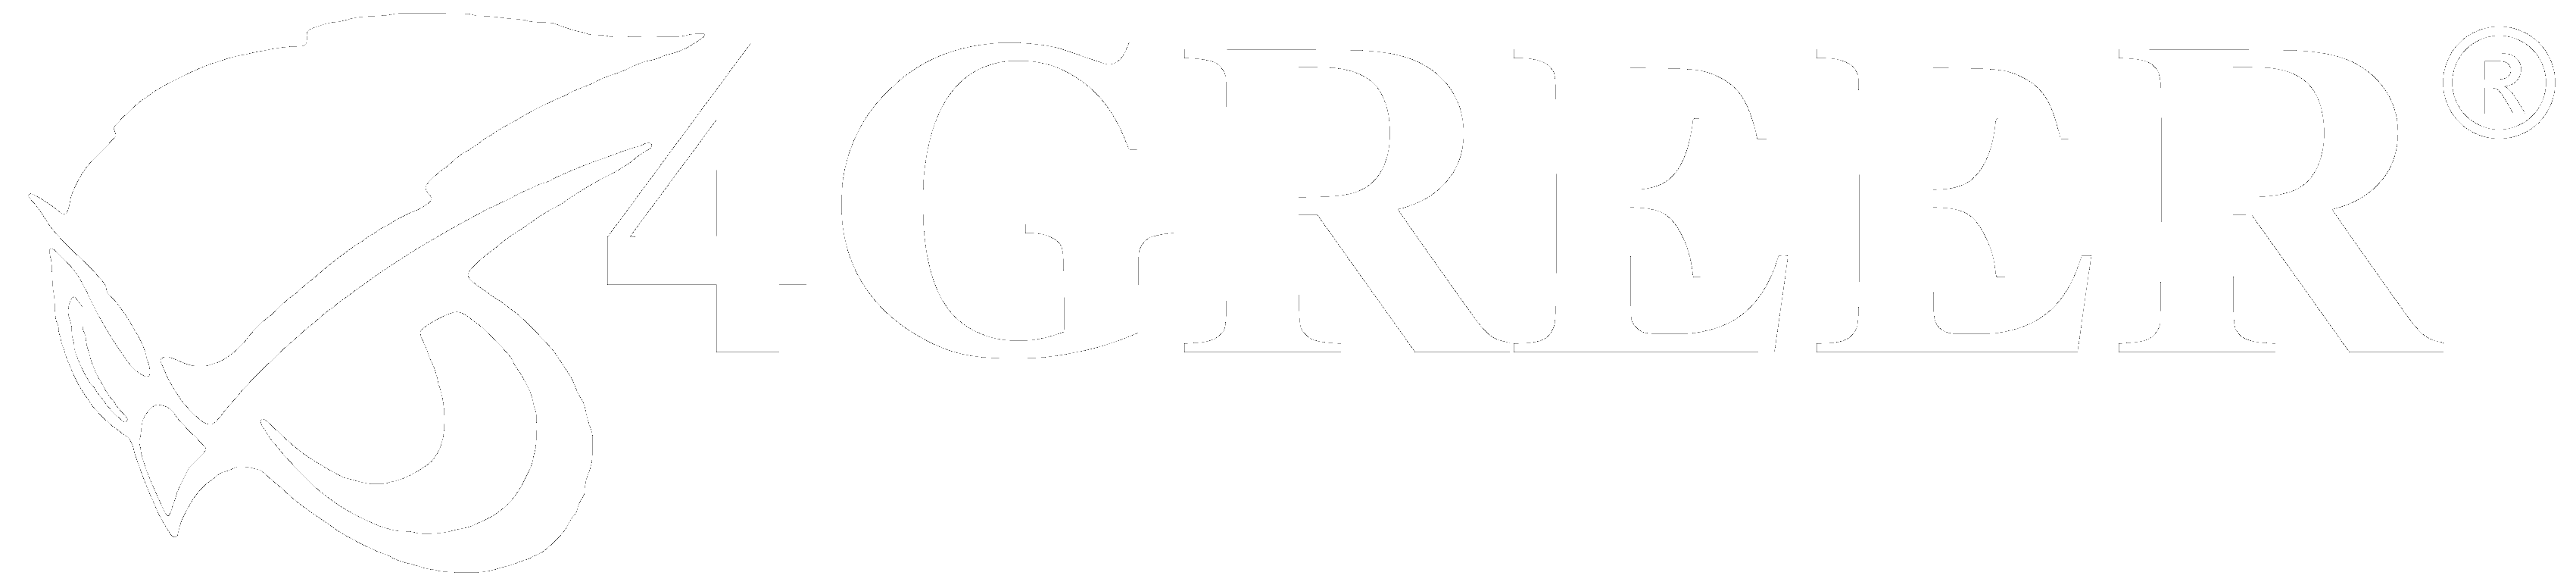 4GREER Logo